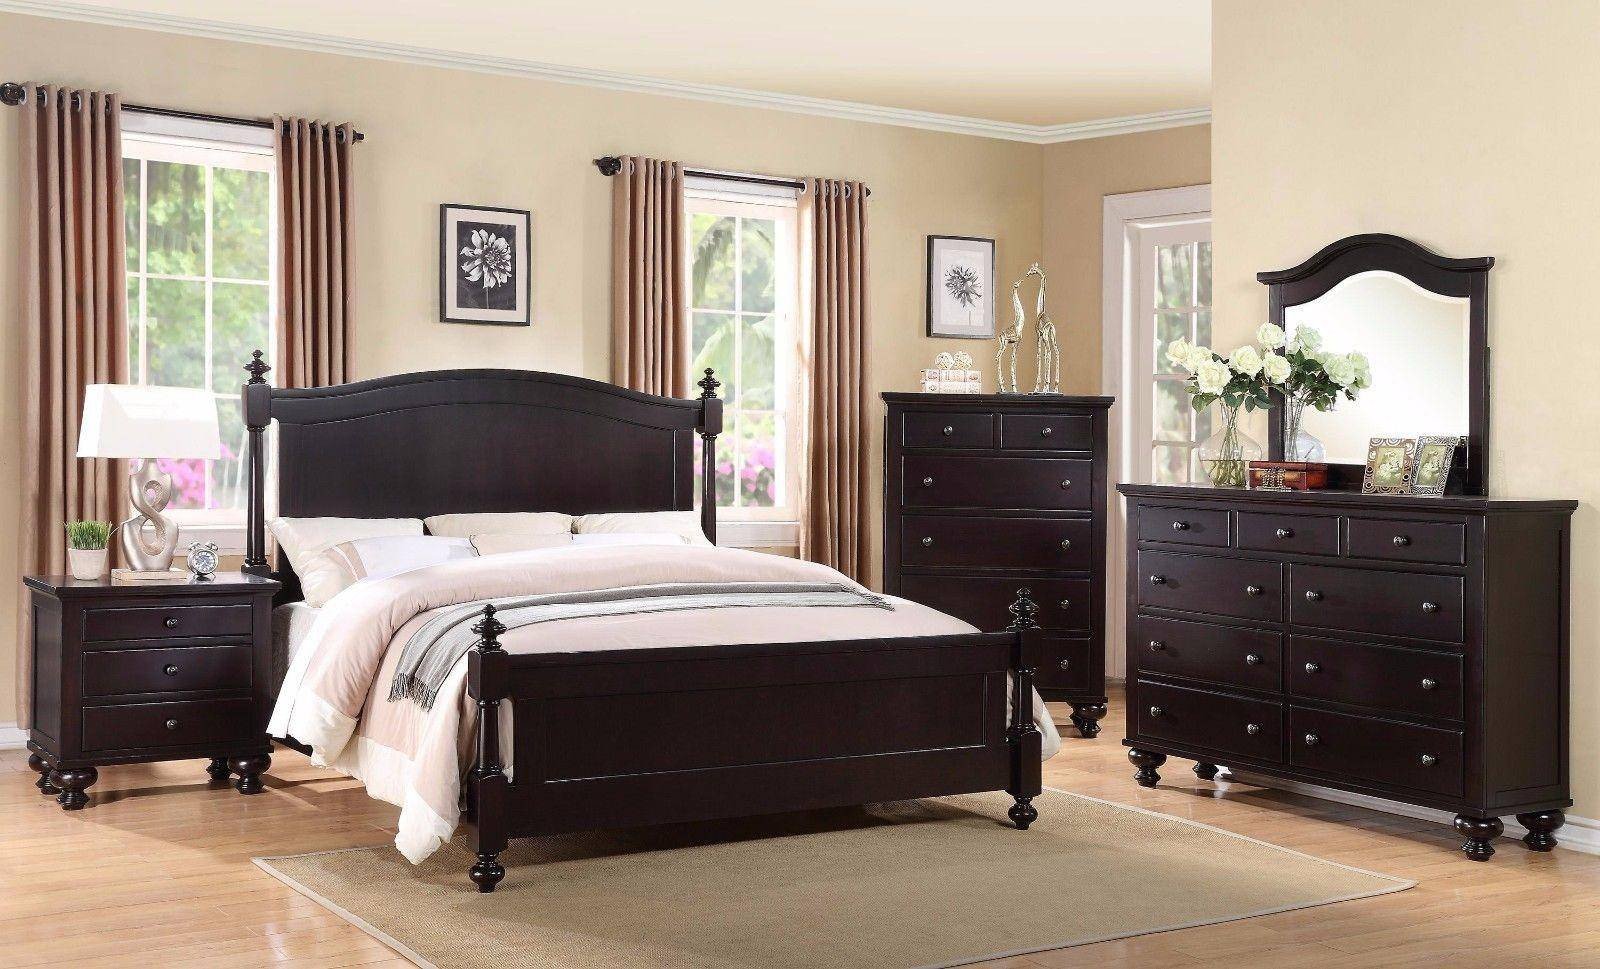 3 Pice Bedroom Set Fresh Crown Mark B1350 sommer Traditional Black Espresso King Size Bedroom Set 3 Pcs